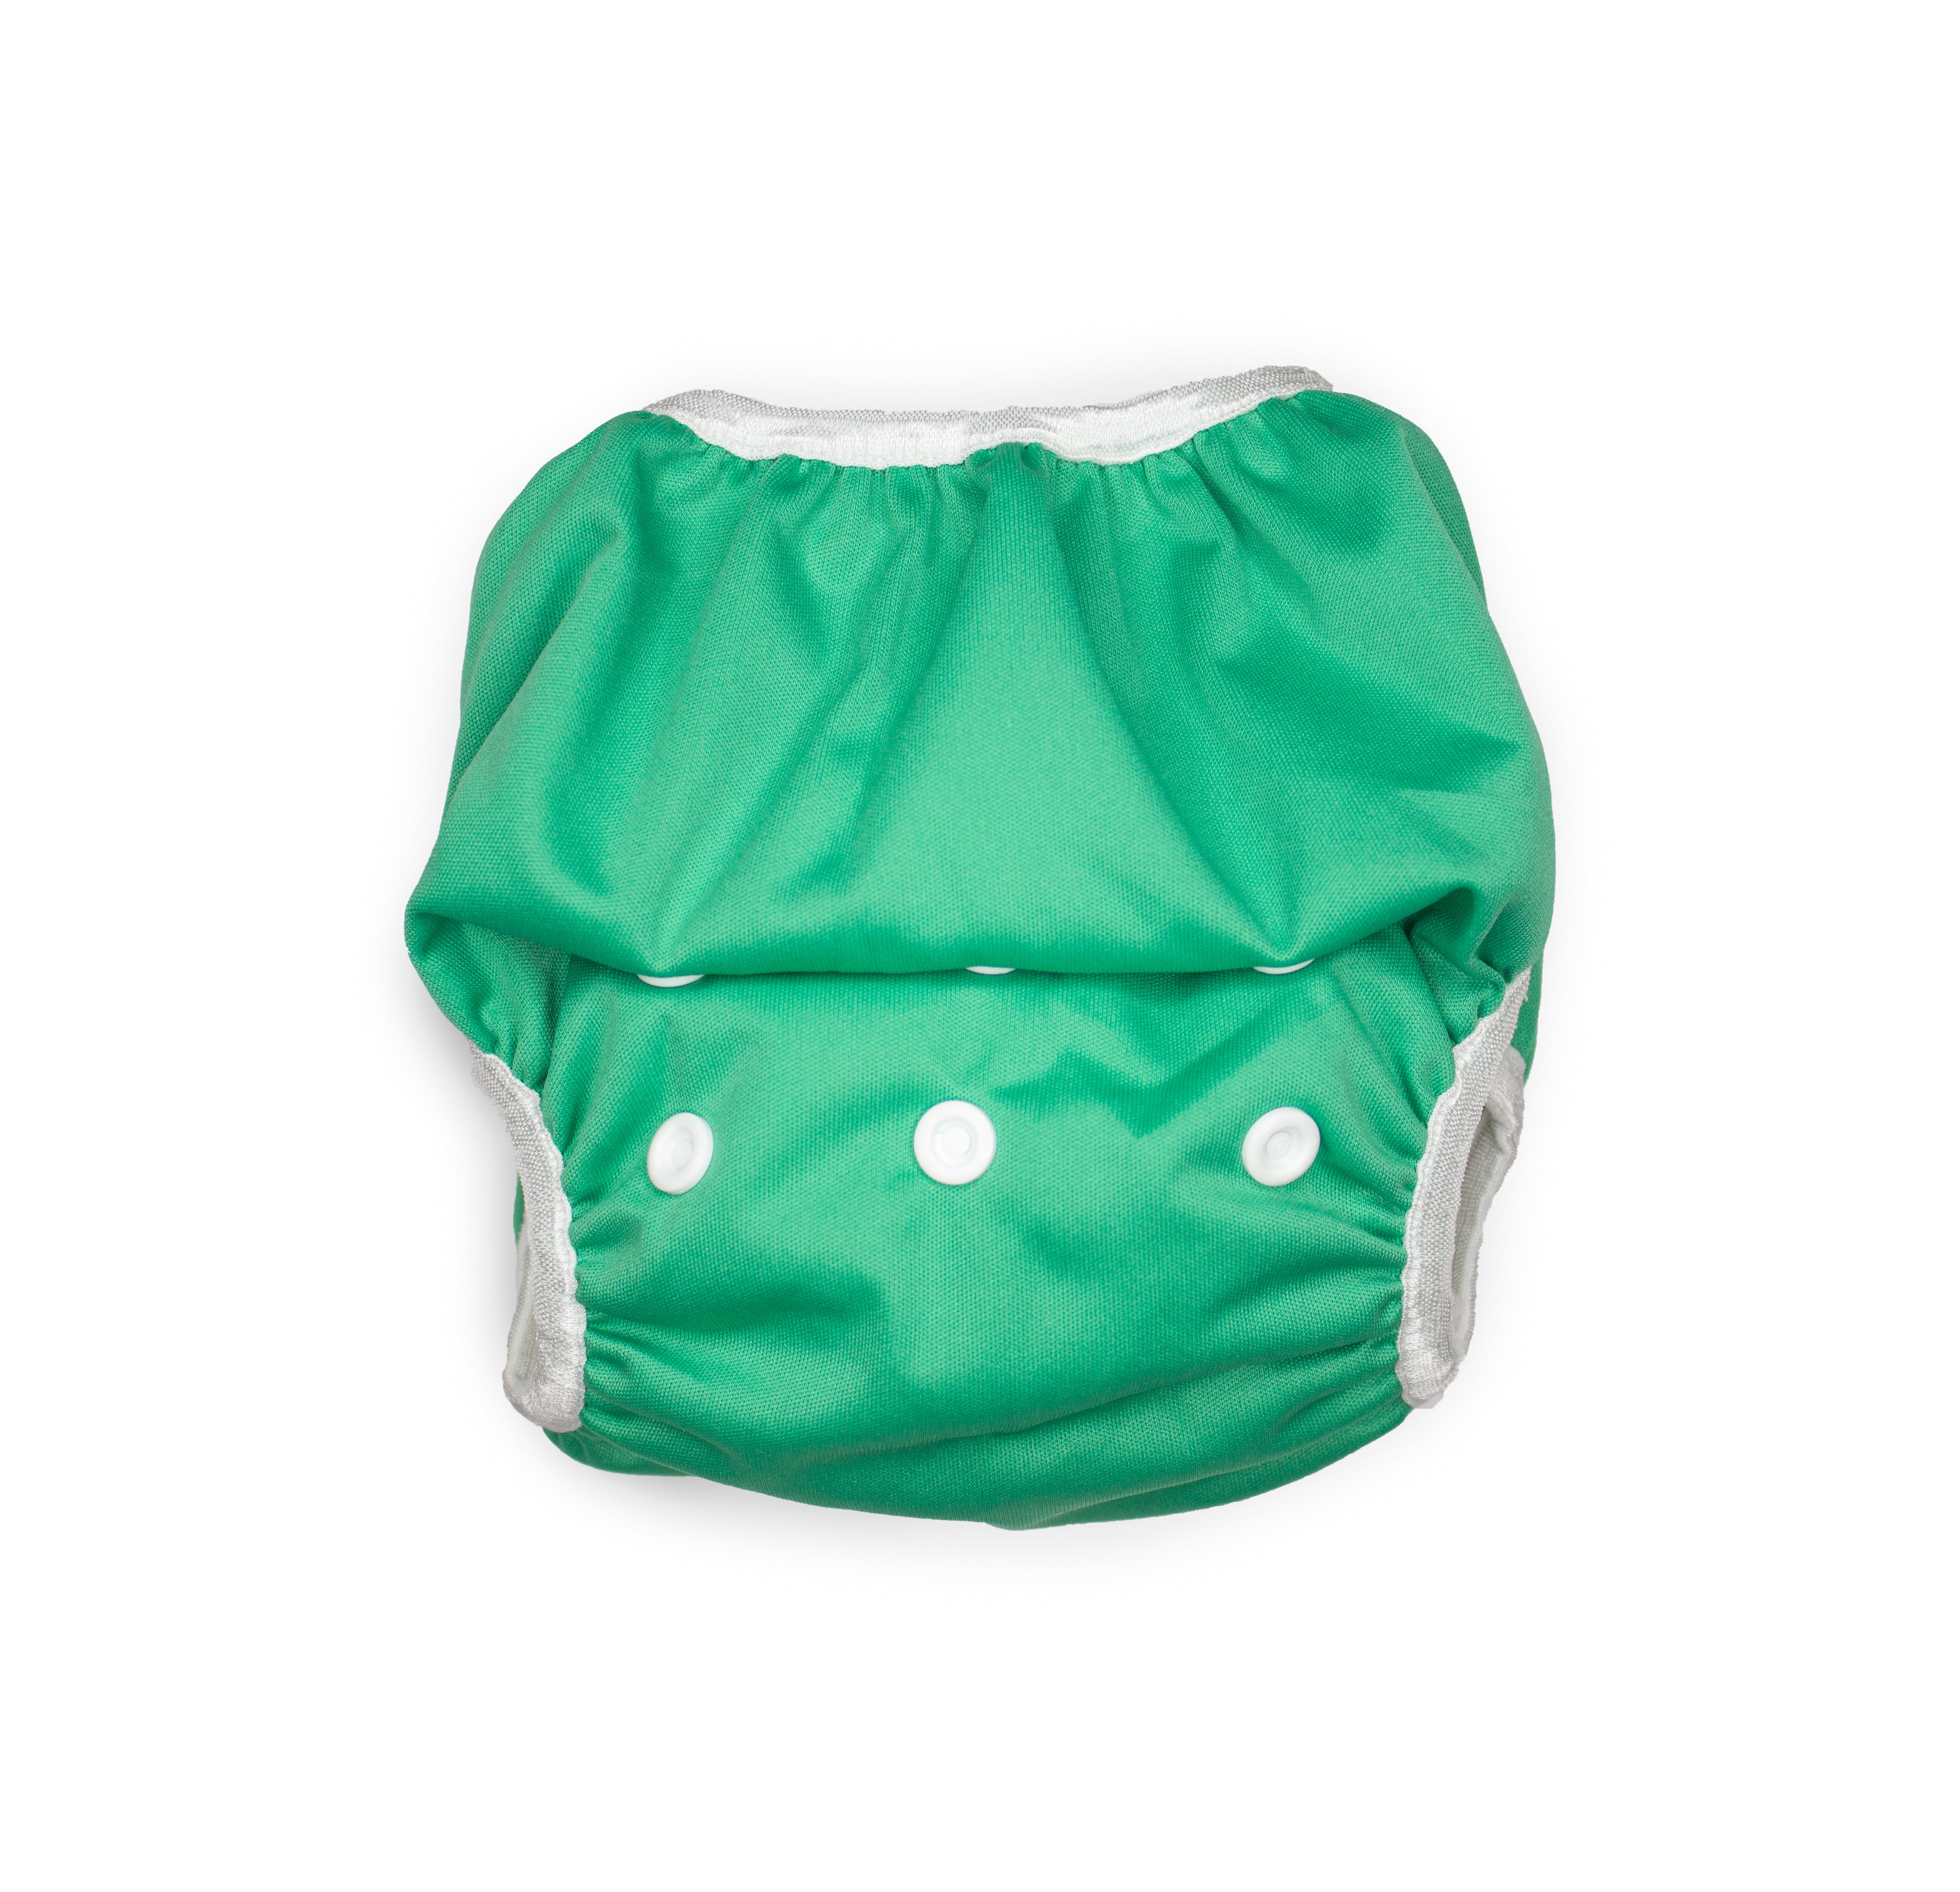 Swim Nappy- Emerald Green